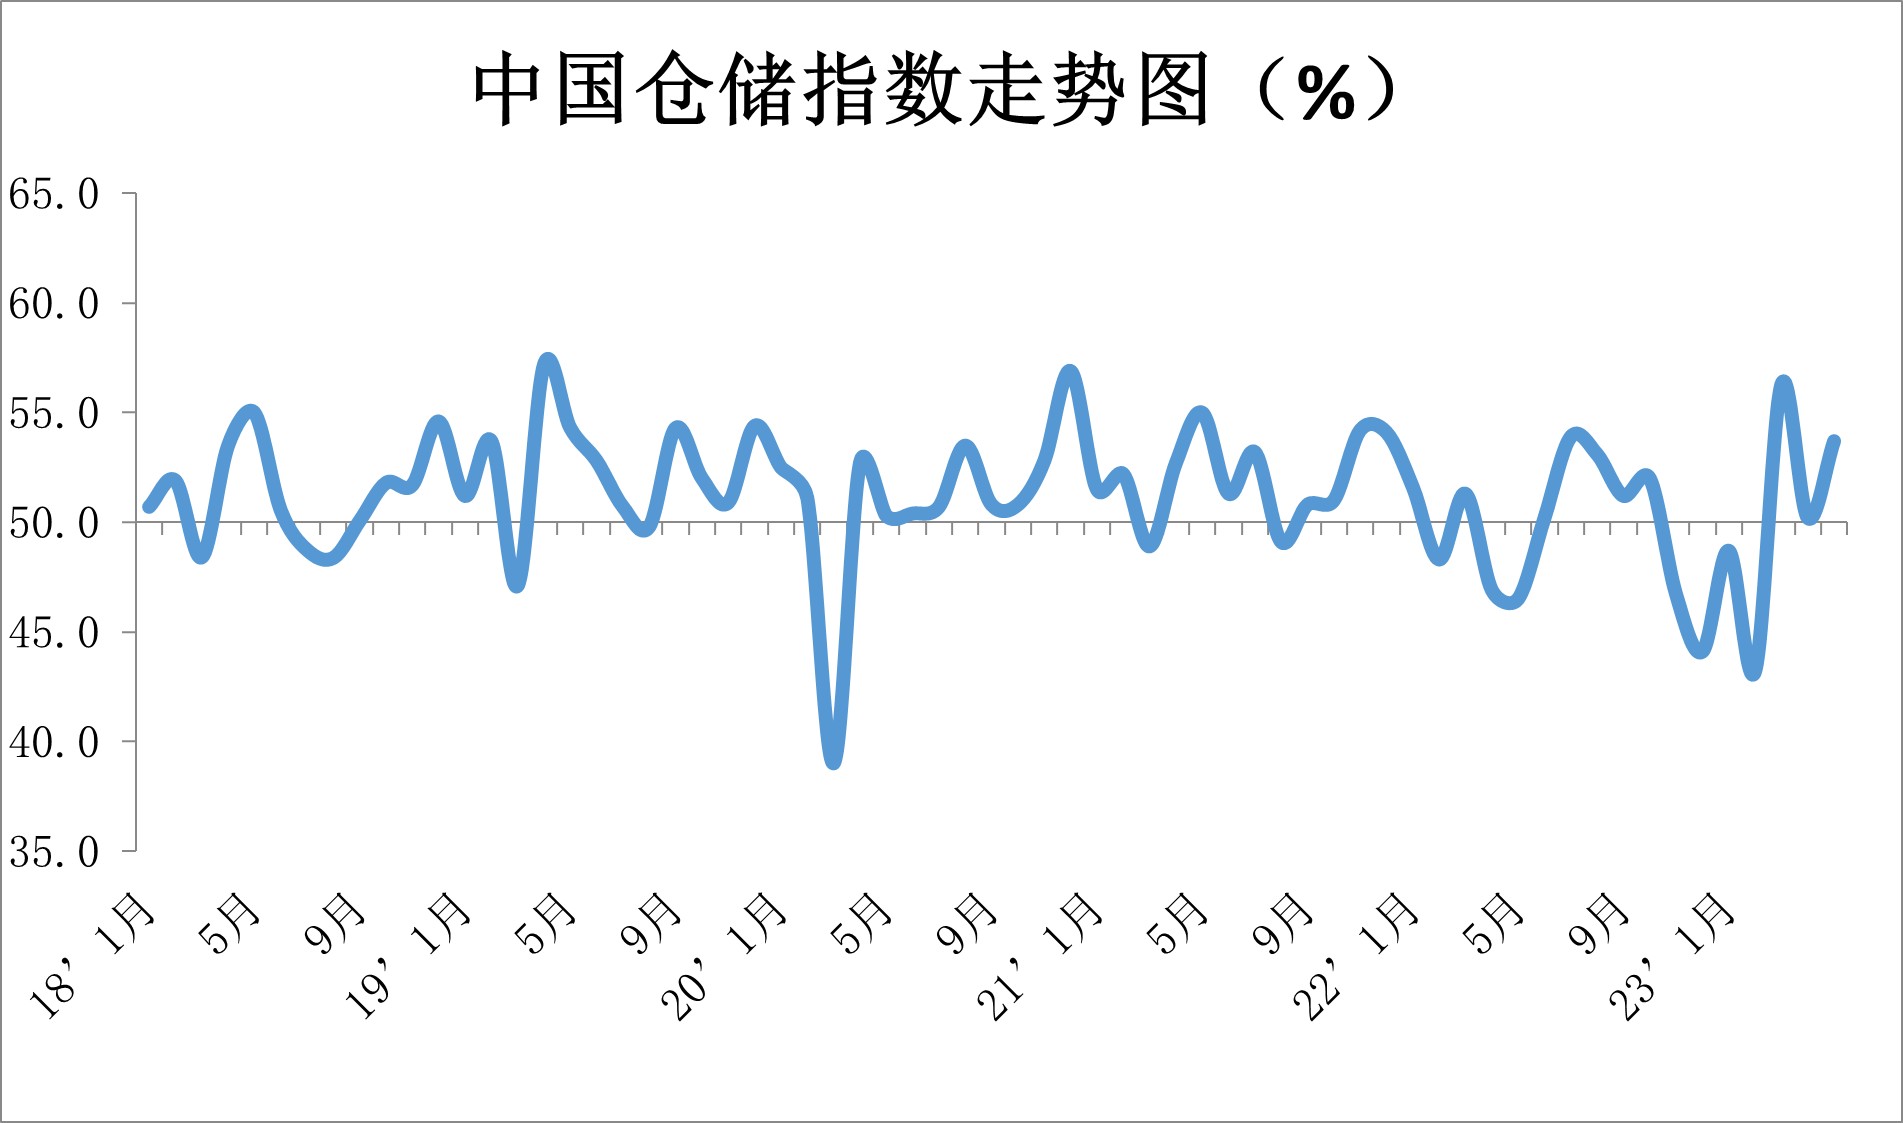 中国物流与采购联合会：4月份中国物流业景气指数为53.8% 环比回落1.7个百分点